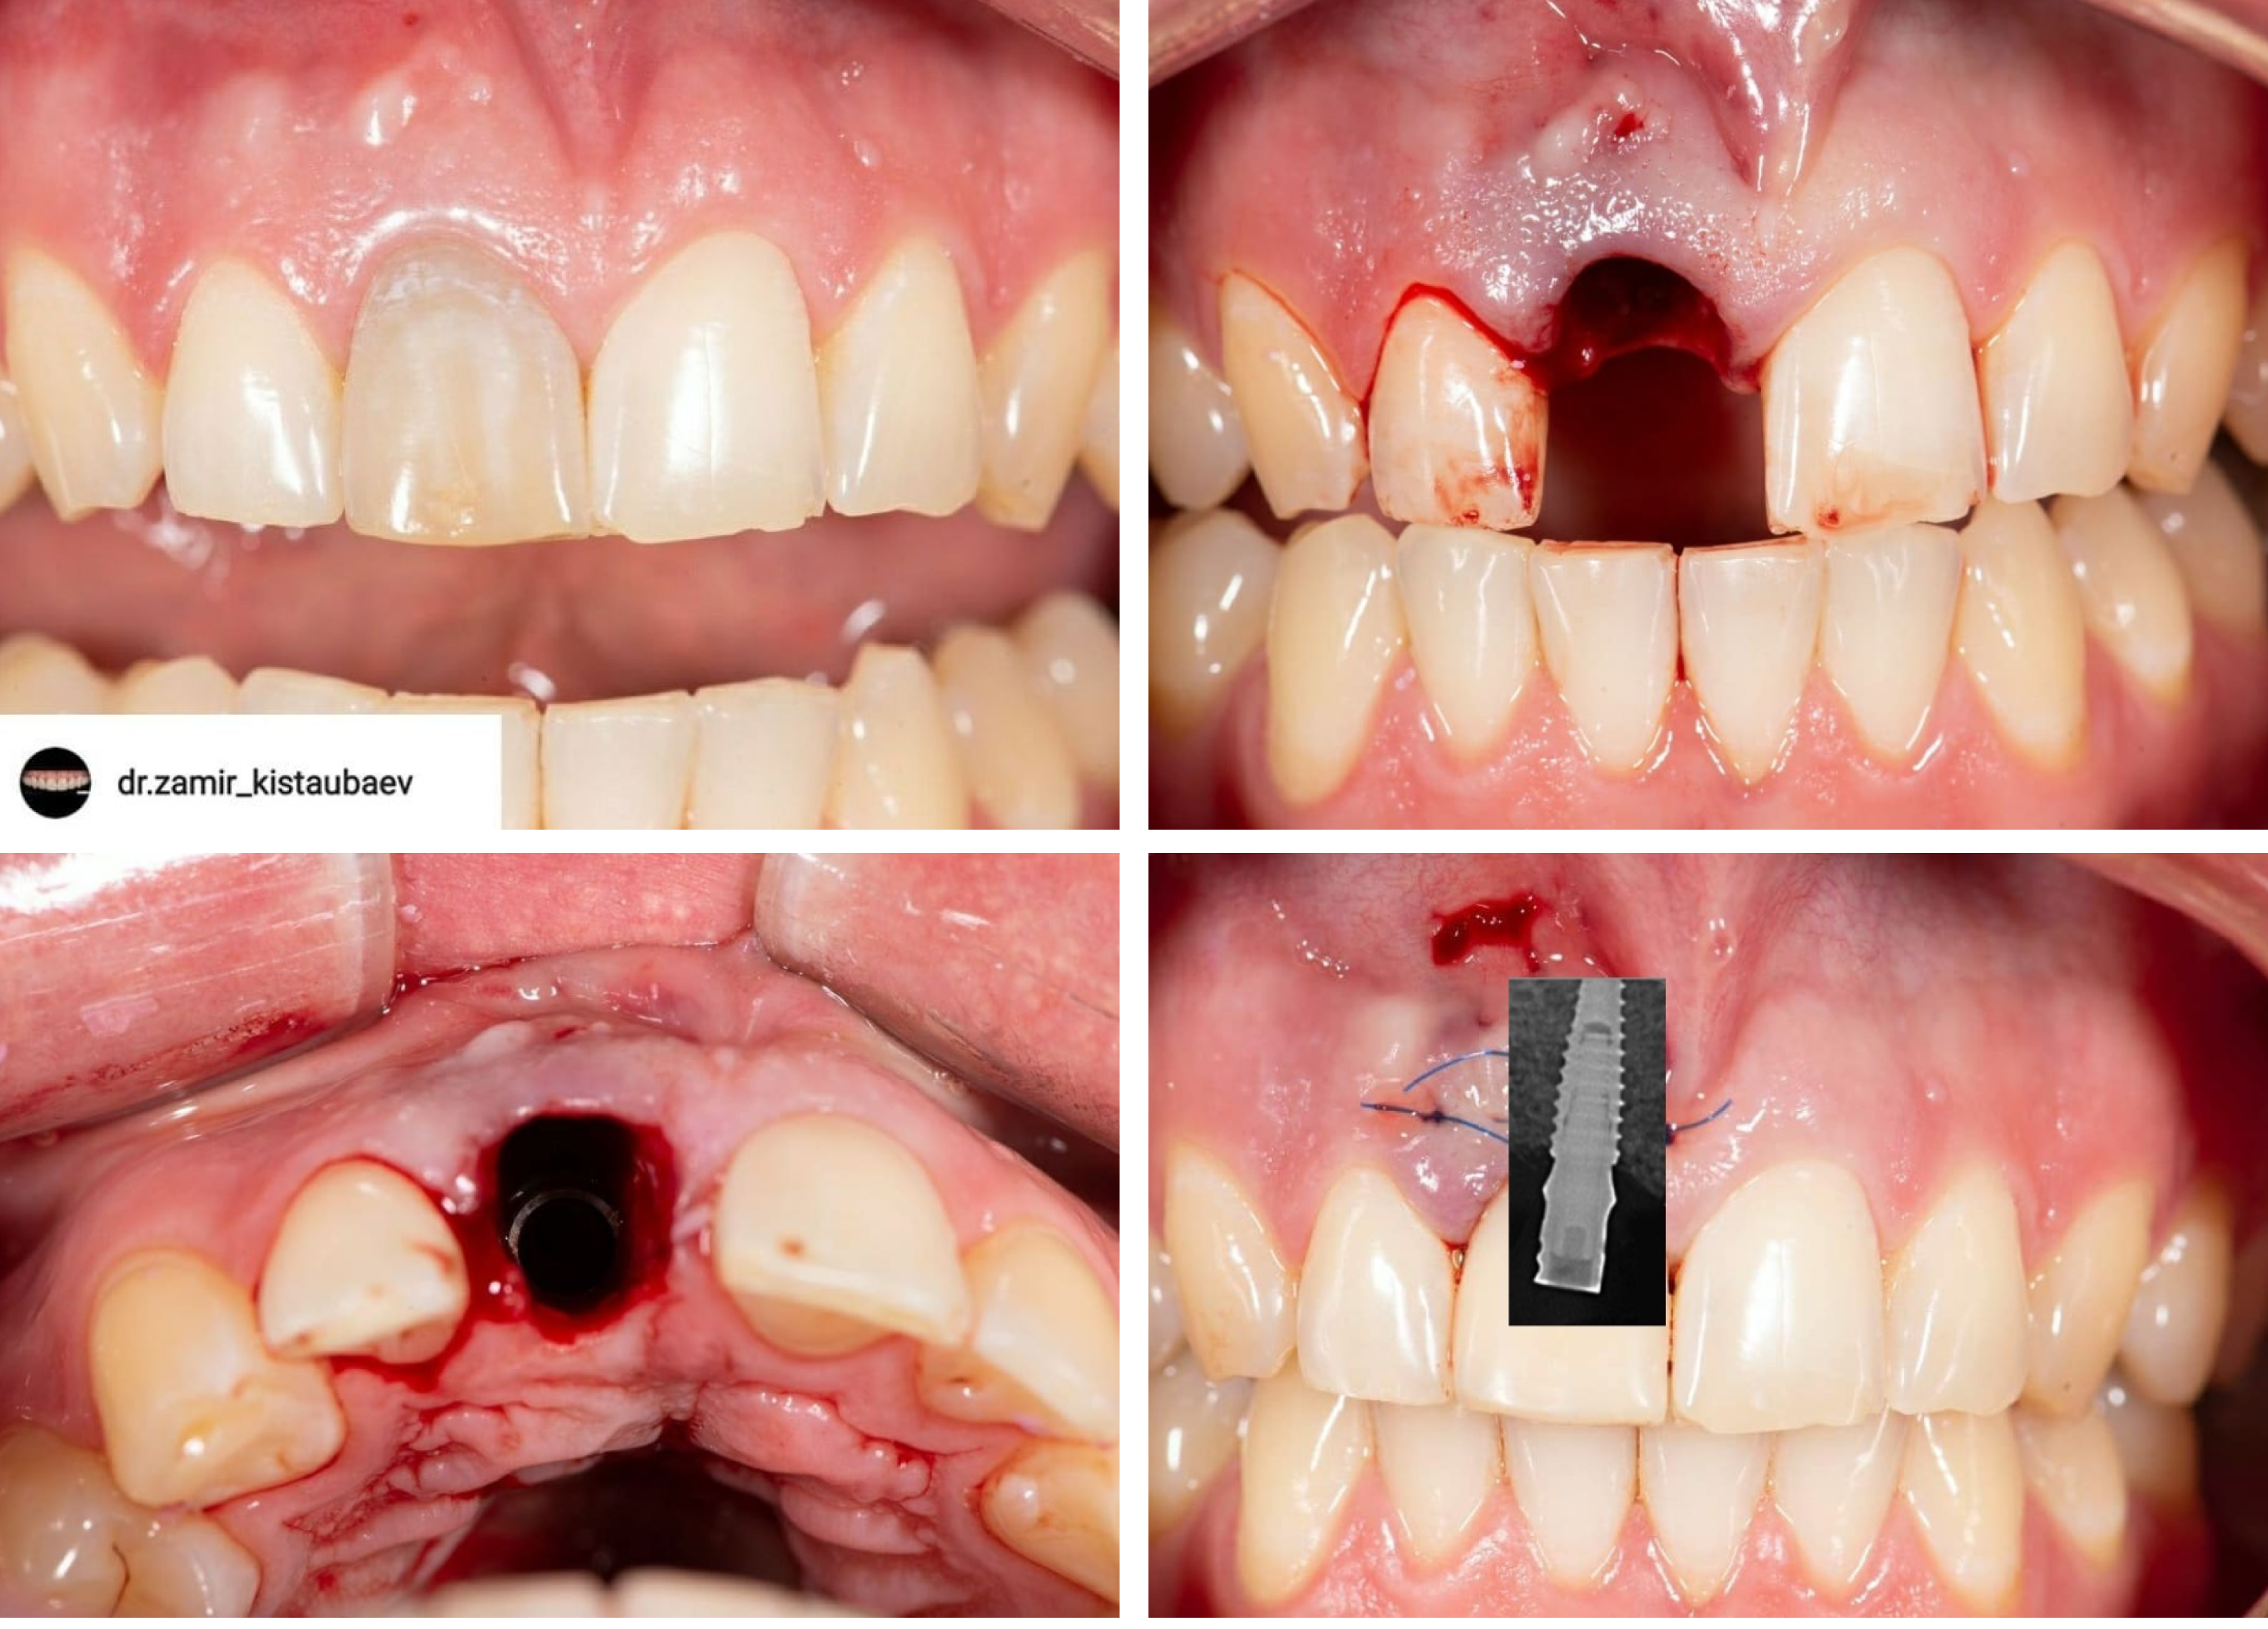 Клинический случай @dr.zamir_kistaubaev: удаление треснутого корня зуба с одномоментной имплантацией AnyRidge